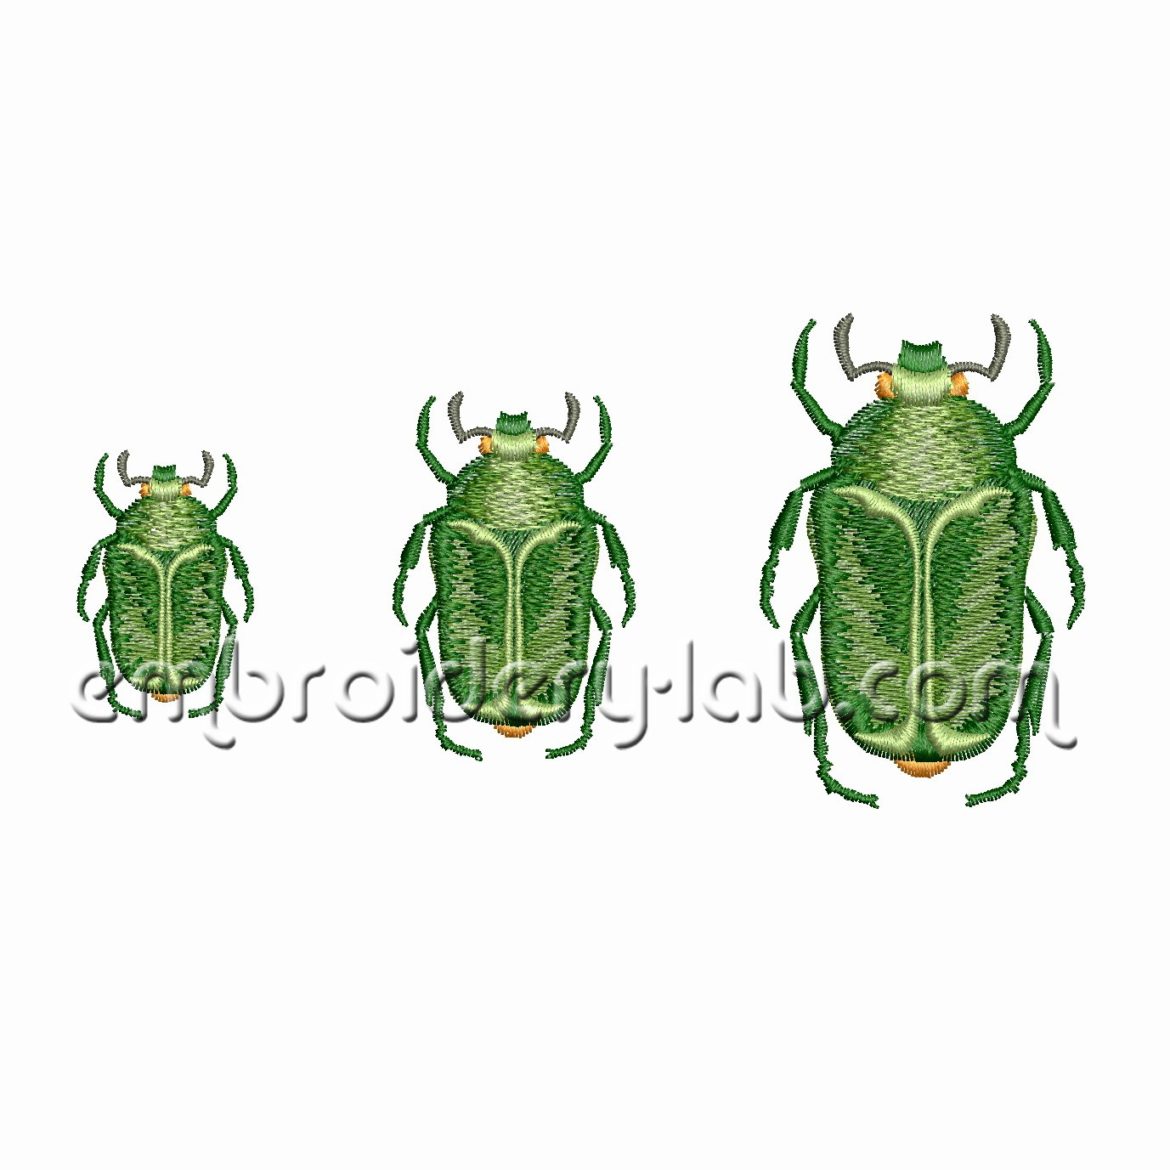 Beetle 0001